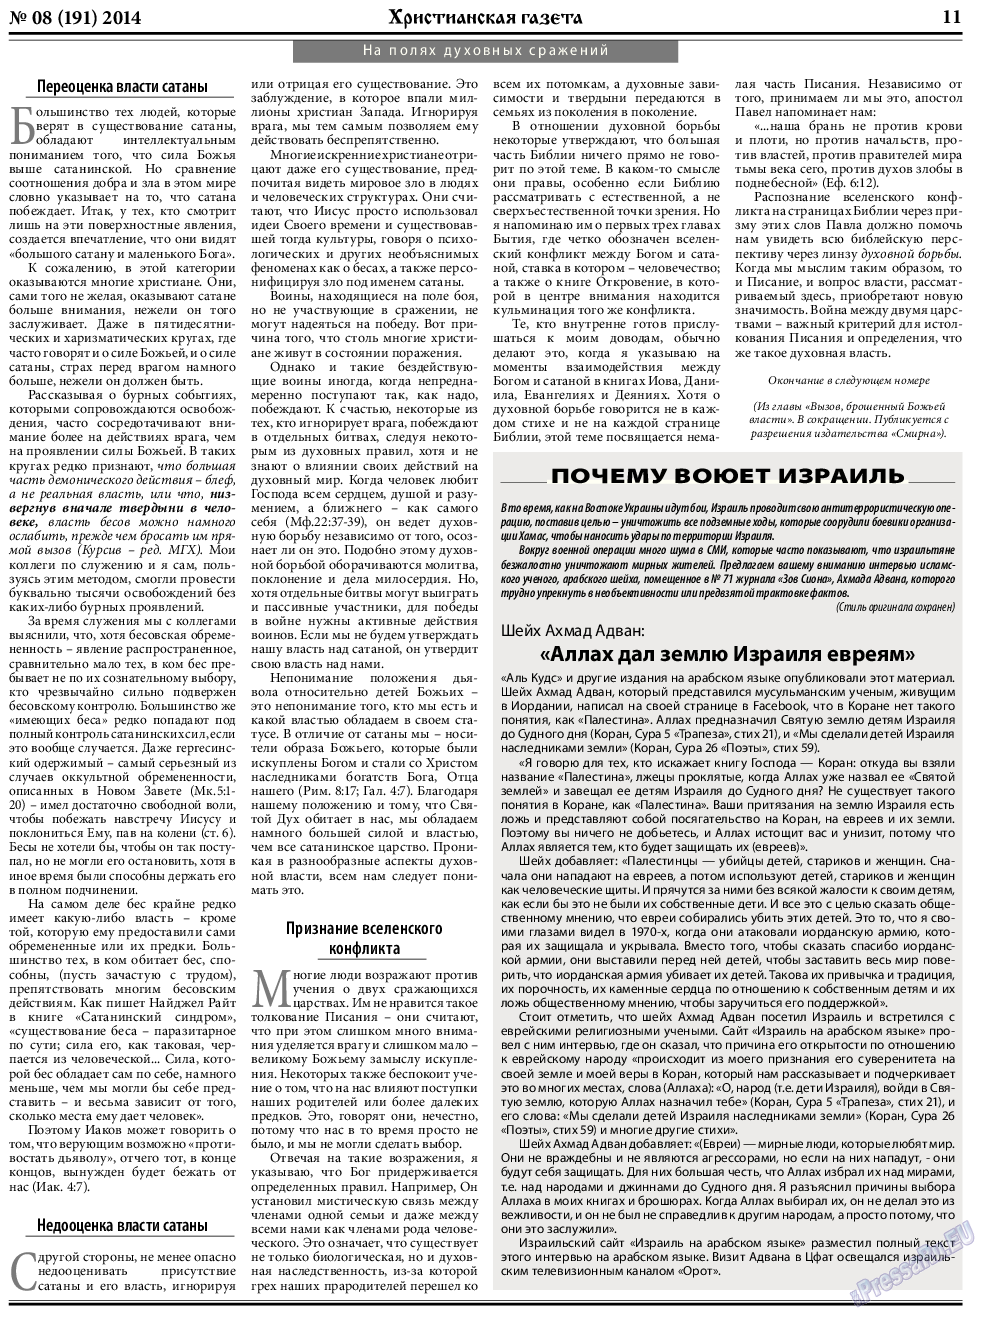 Христианская газета, газета. 2014 №8 стр.11